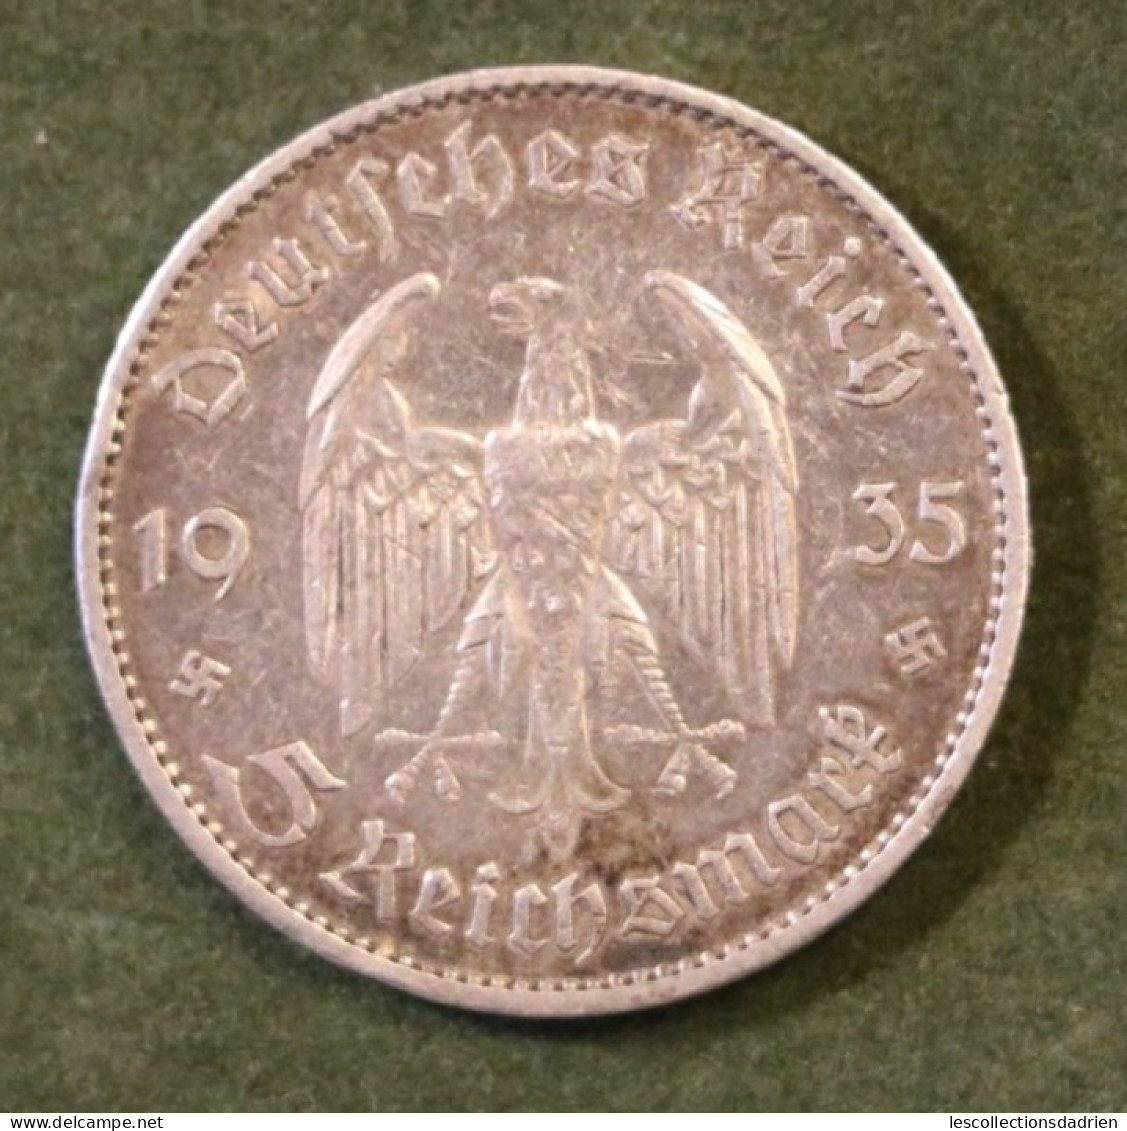 Pièce En Argent Allemagne 5 Reichsmarck 1935 Église De La Garnison De Potsdam  - German Silver Coin - 5 Reichsmark